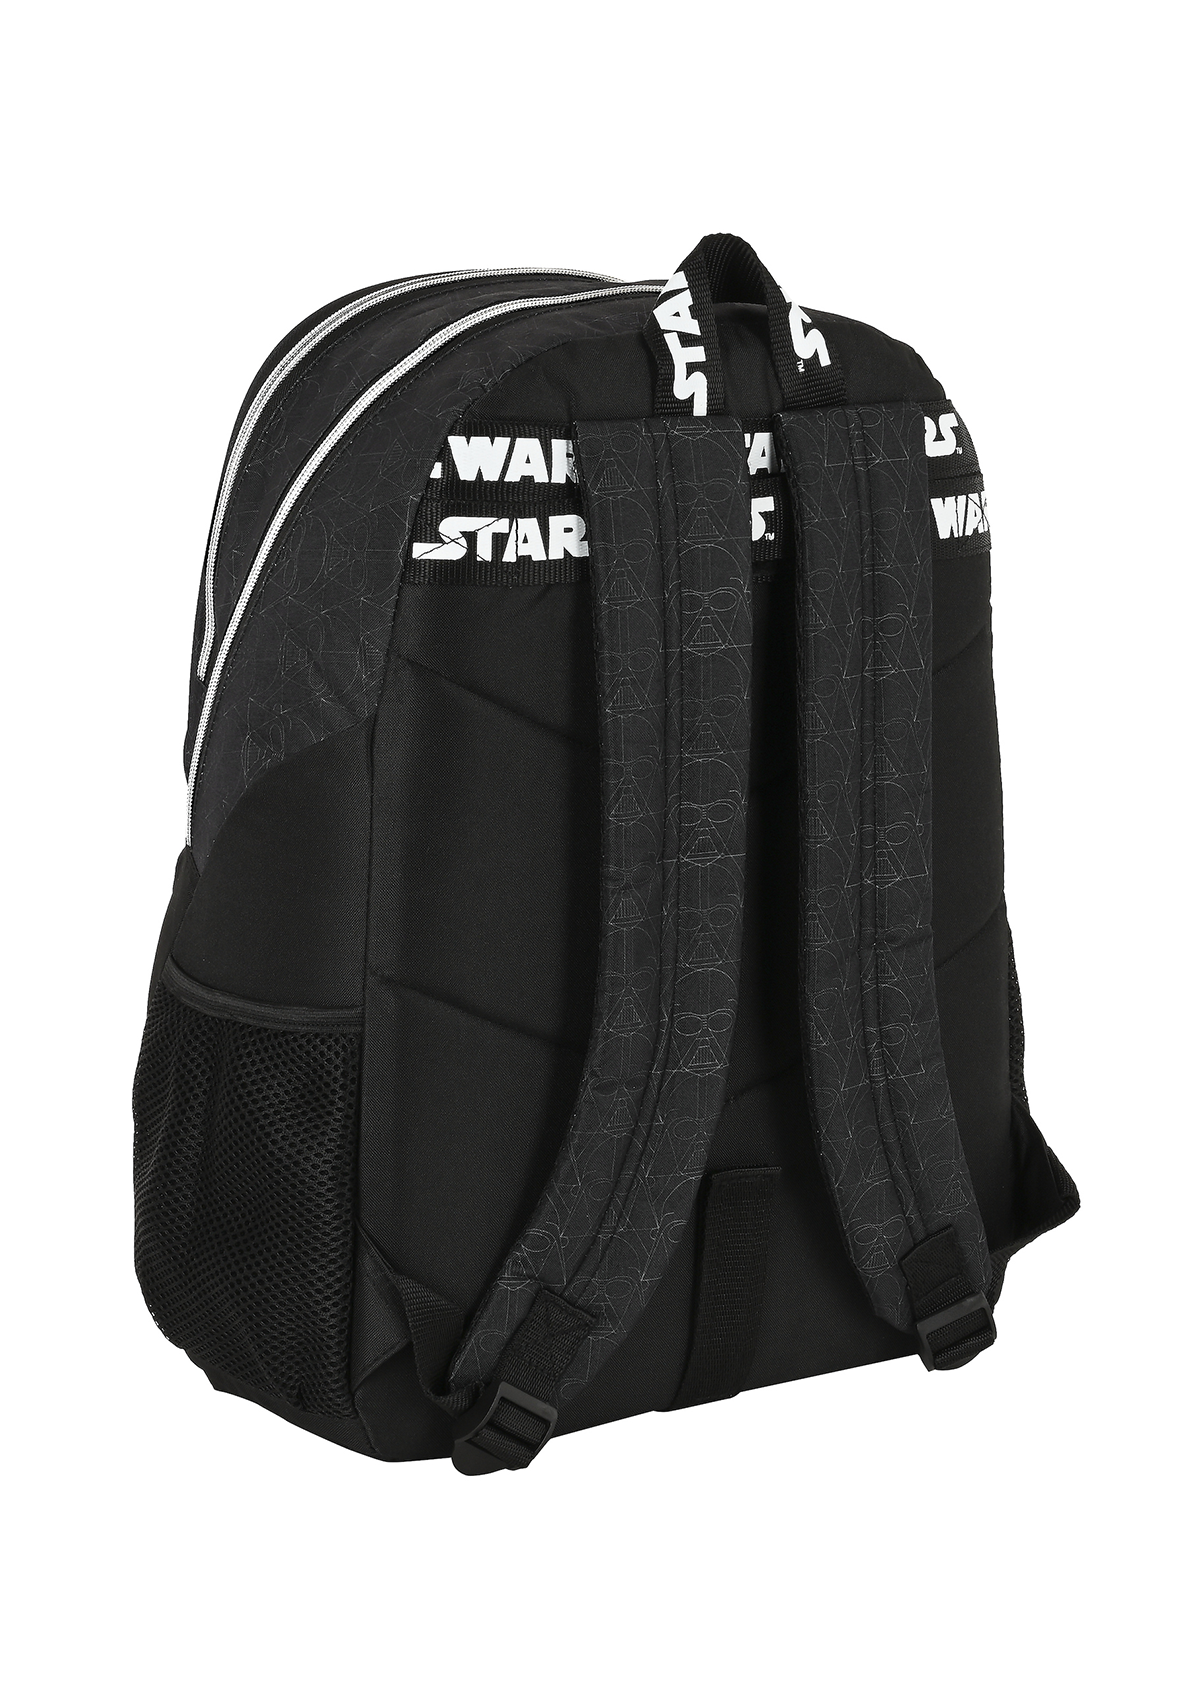 Star Wars Fighter Large Backpack